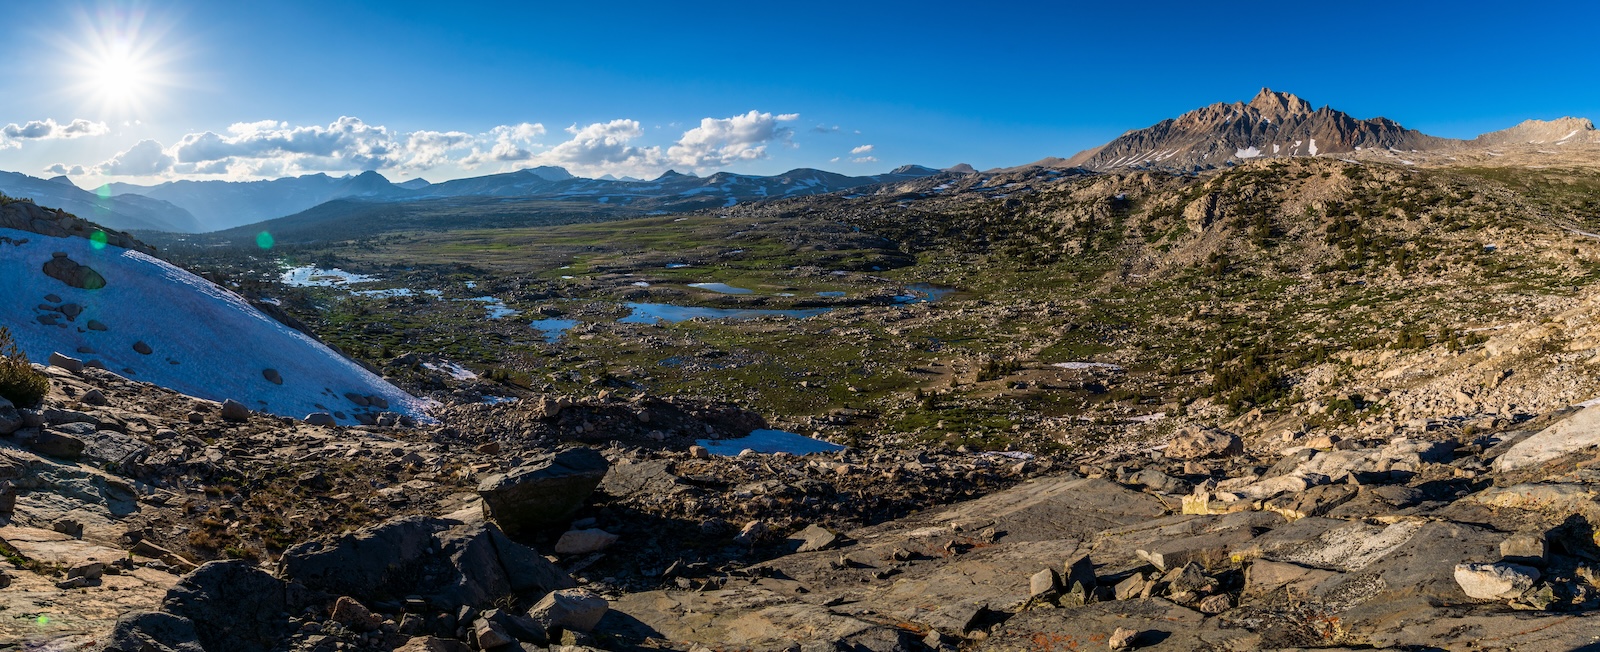 Panoramic view of Humphreys Basin, Mount Humphreys and Piute Pass